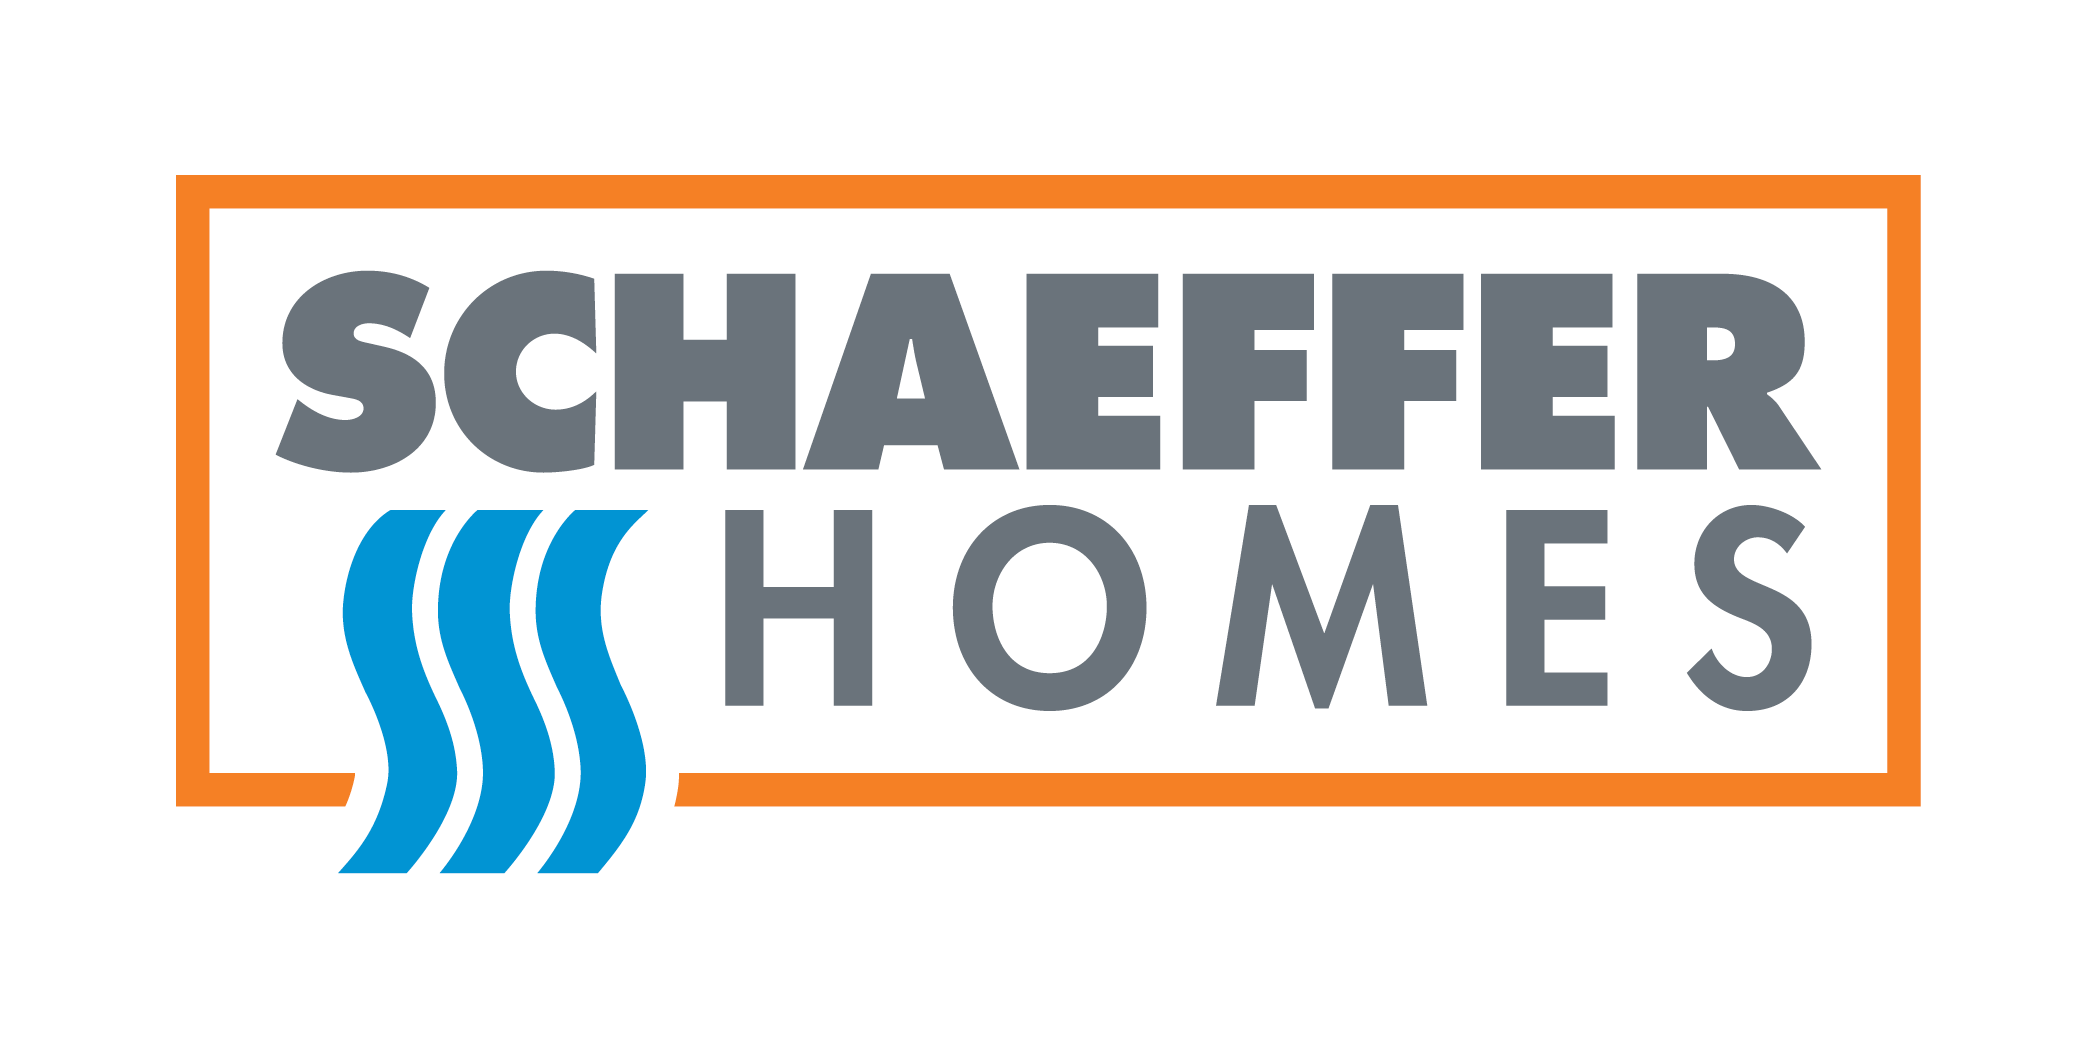 Schaeffer Homes - Central NJ